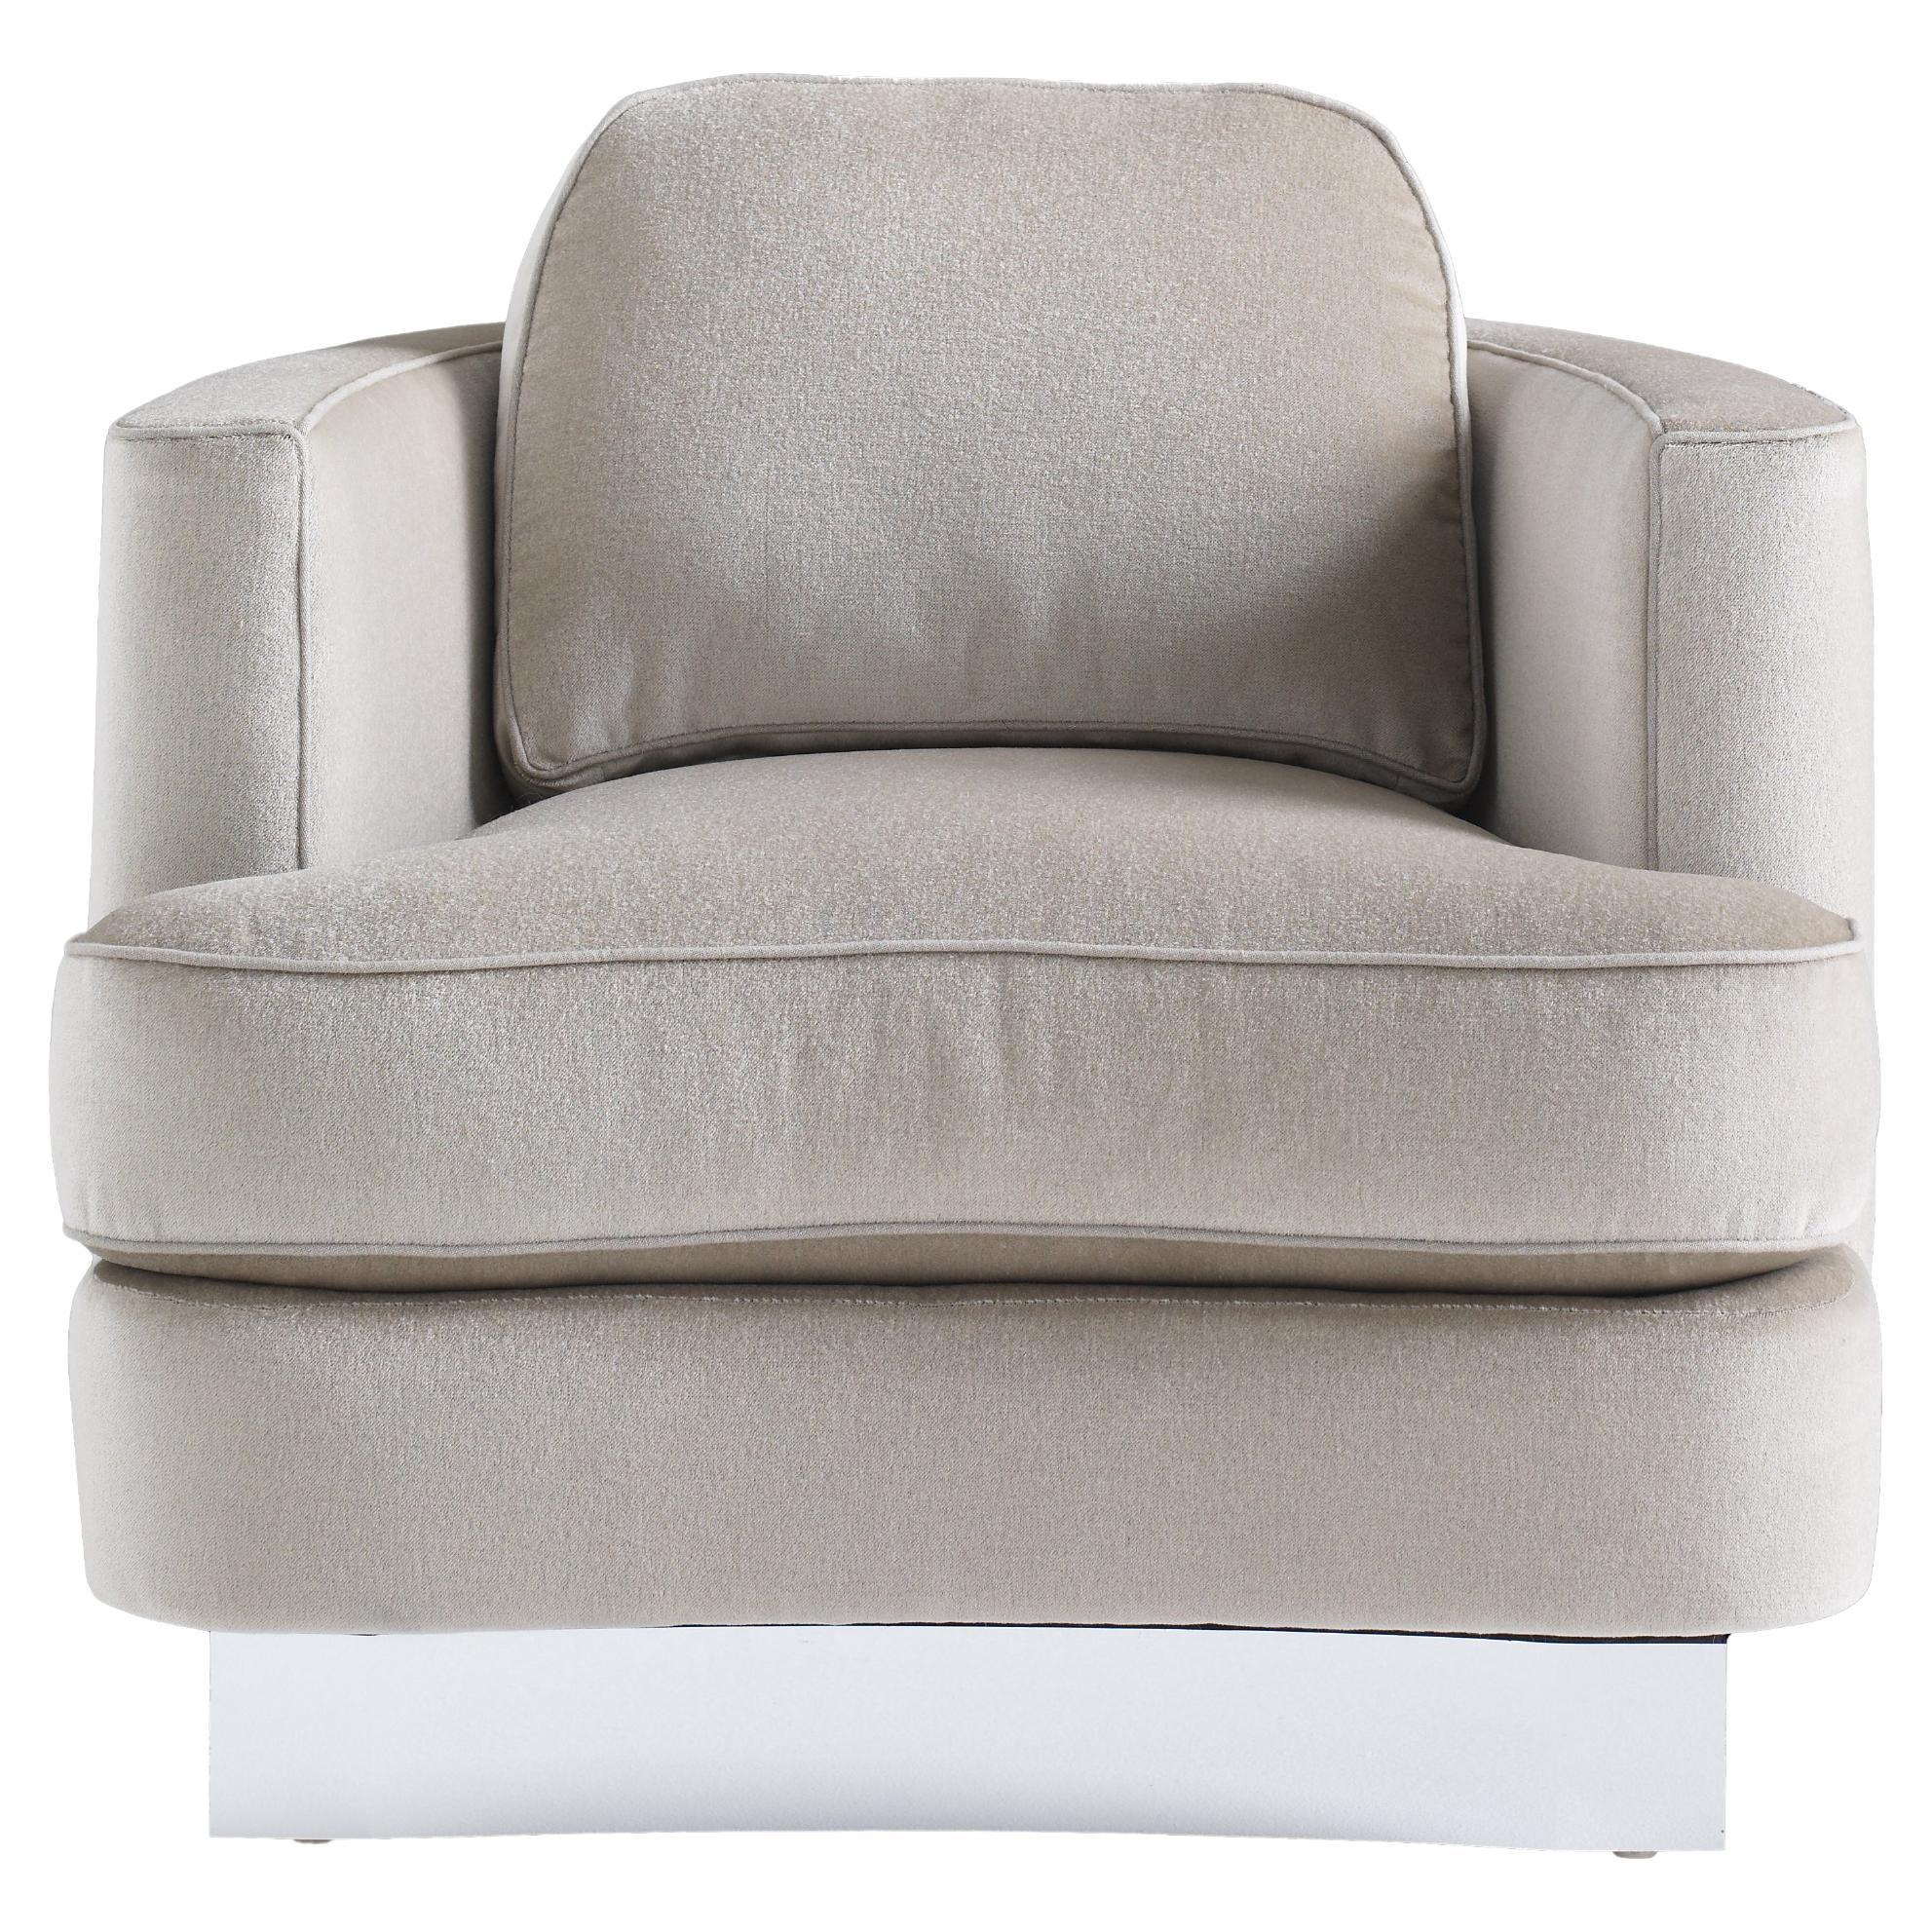 Cubist Curve Lounge Chair, fauteuil pivotant rembourré en vente